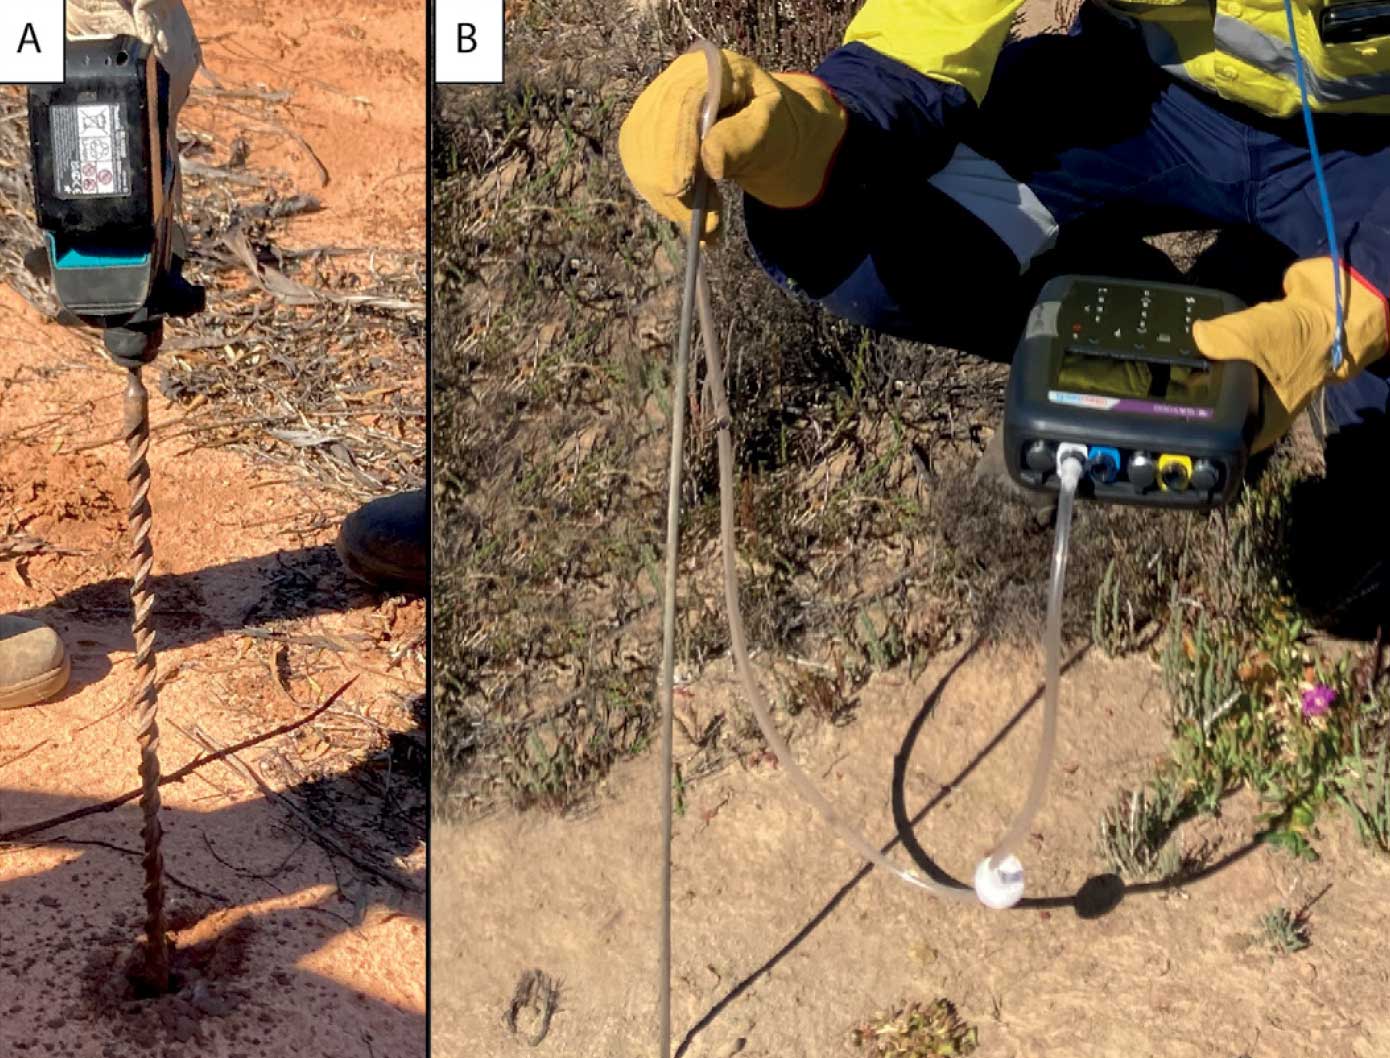 A field tech using a soil gas sampling tool.